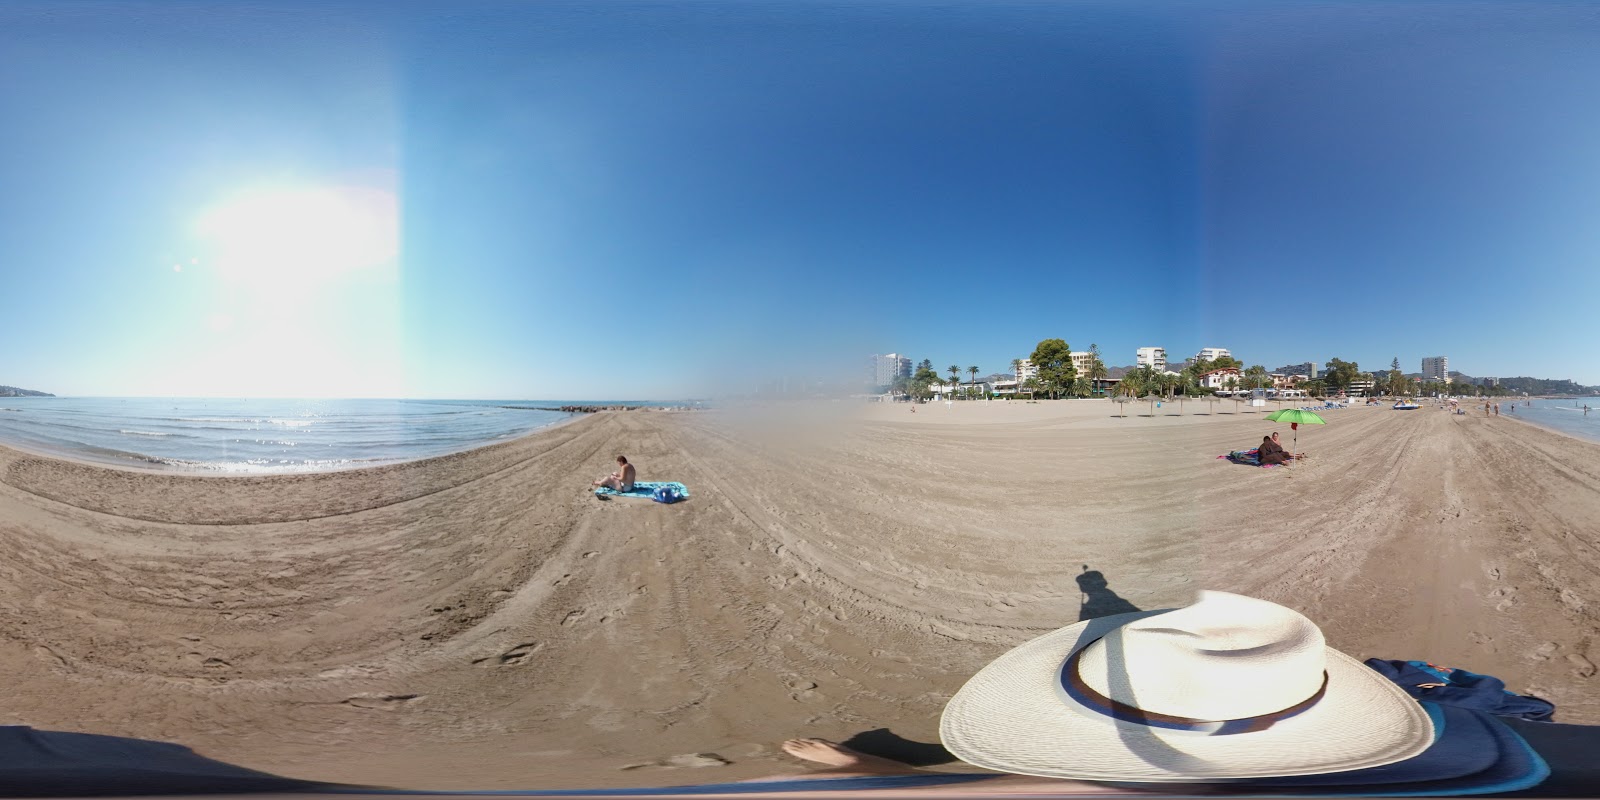 Playa del Torreon'in fotoğrafı kahverengi kum yüzey ile